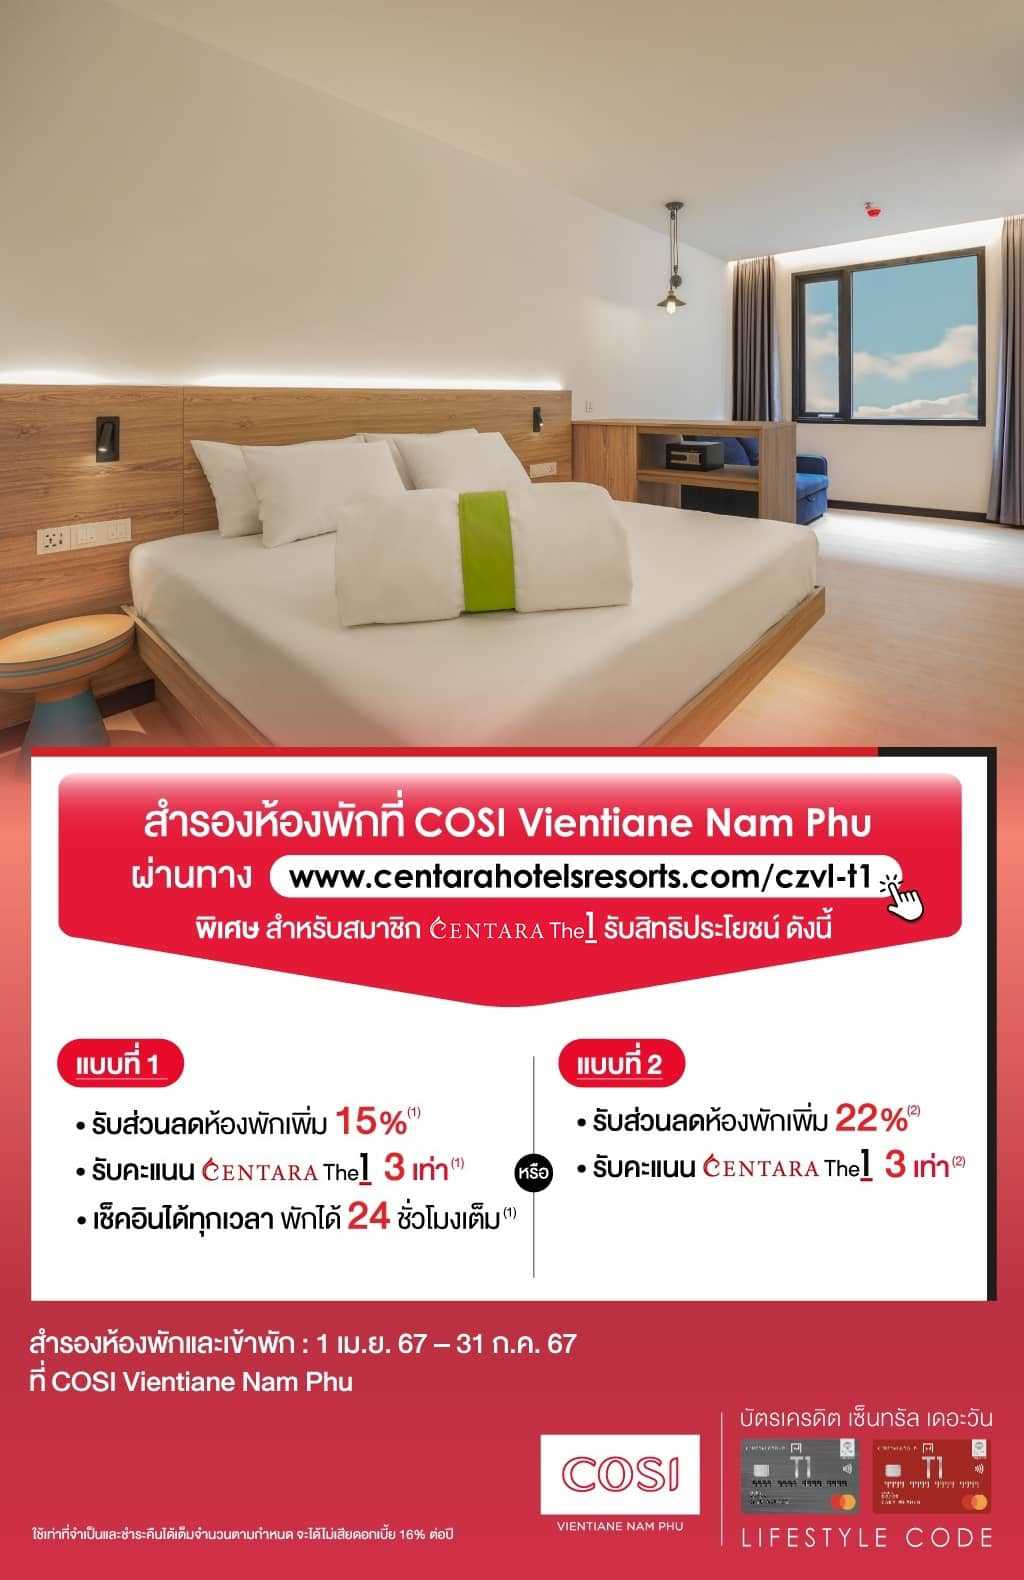 รับส่วนลดเพิ่มสูงสุด 22%* + รับคะแนน CentaraThe1 3 เท่า* ที่ COSI Vientiane Nam Phu | บัตรเครดิต | สมัครบัตรเครดิต | สมัครบัตรเครดิตออนไลน์ | สิทธิประโยชน์บัตรเครดิต | สมัครสินเชื่อออนไลน์ | บัตรเครดิต ผ่อน 0% | บัตรเครดิต ใช้ต่างประเทศ | บัตรเครดิต ท่องเที่ยว | บัตรเครดิตเติมน้ำมัน